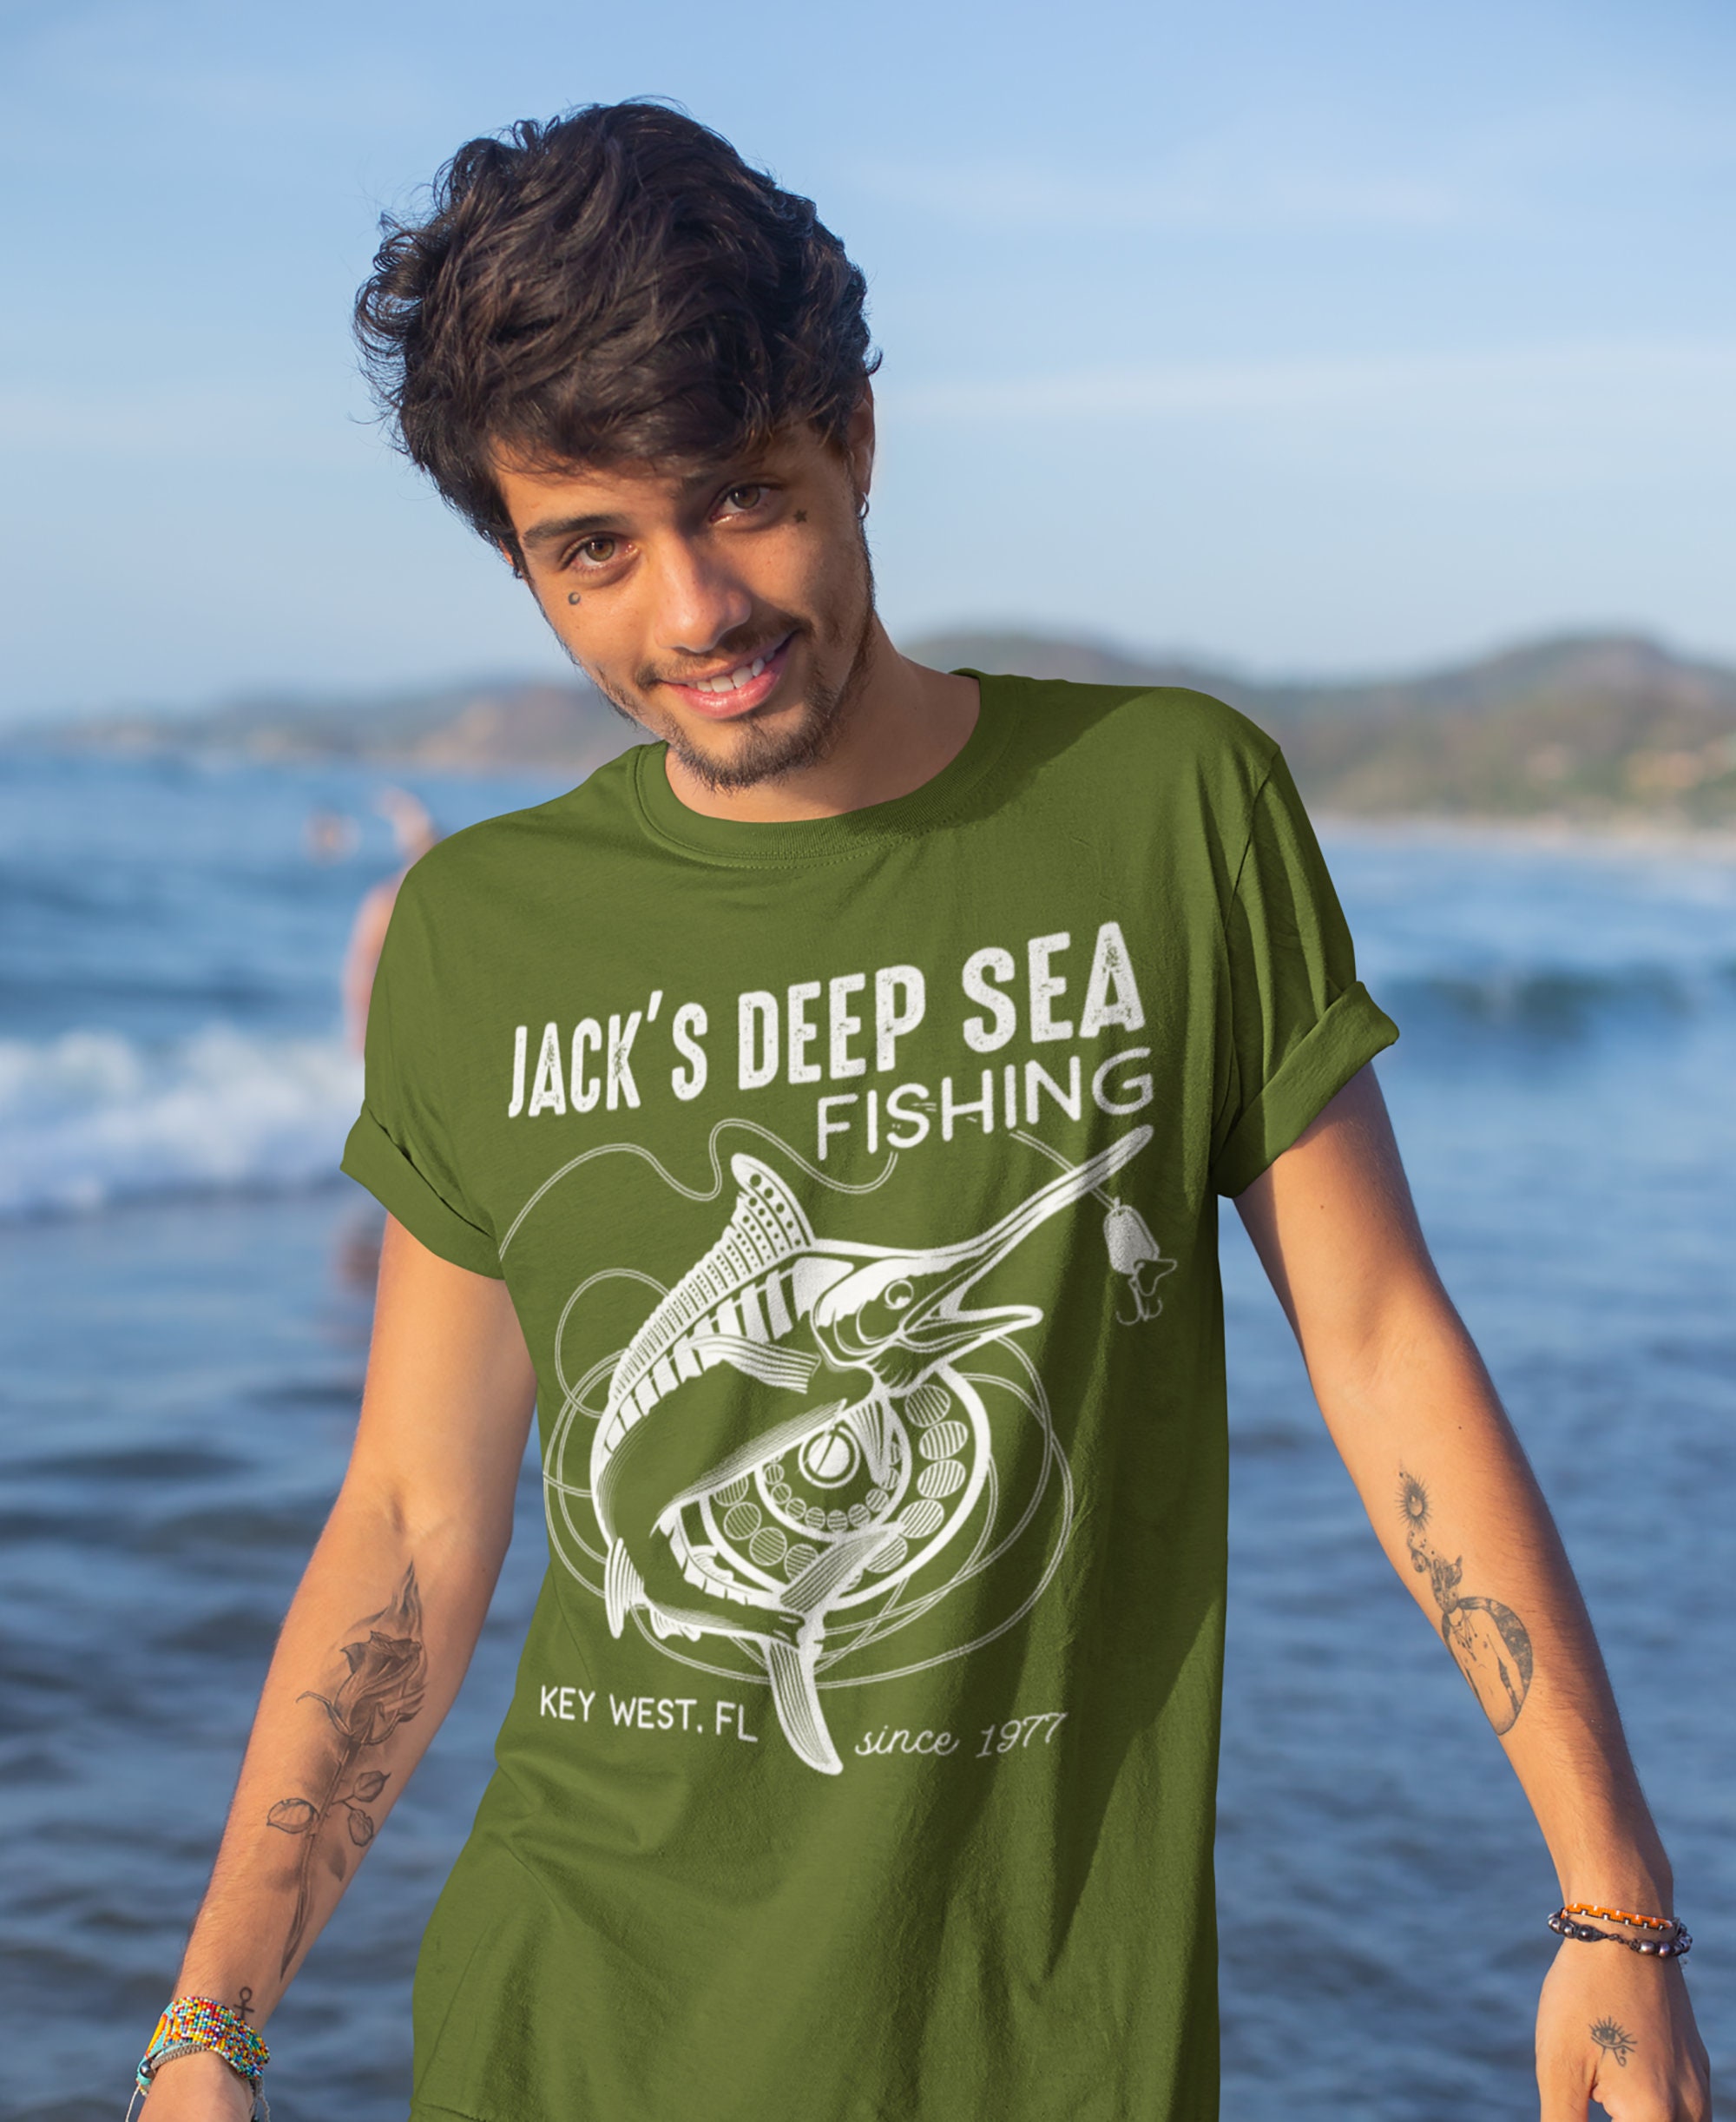 Camiseta de pesca personalizada para hombre, camisas de pesca en